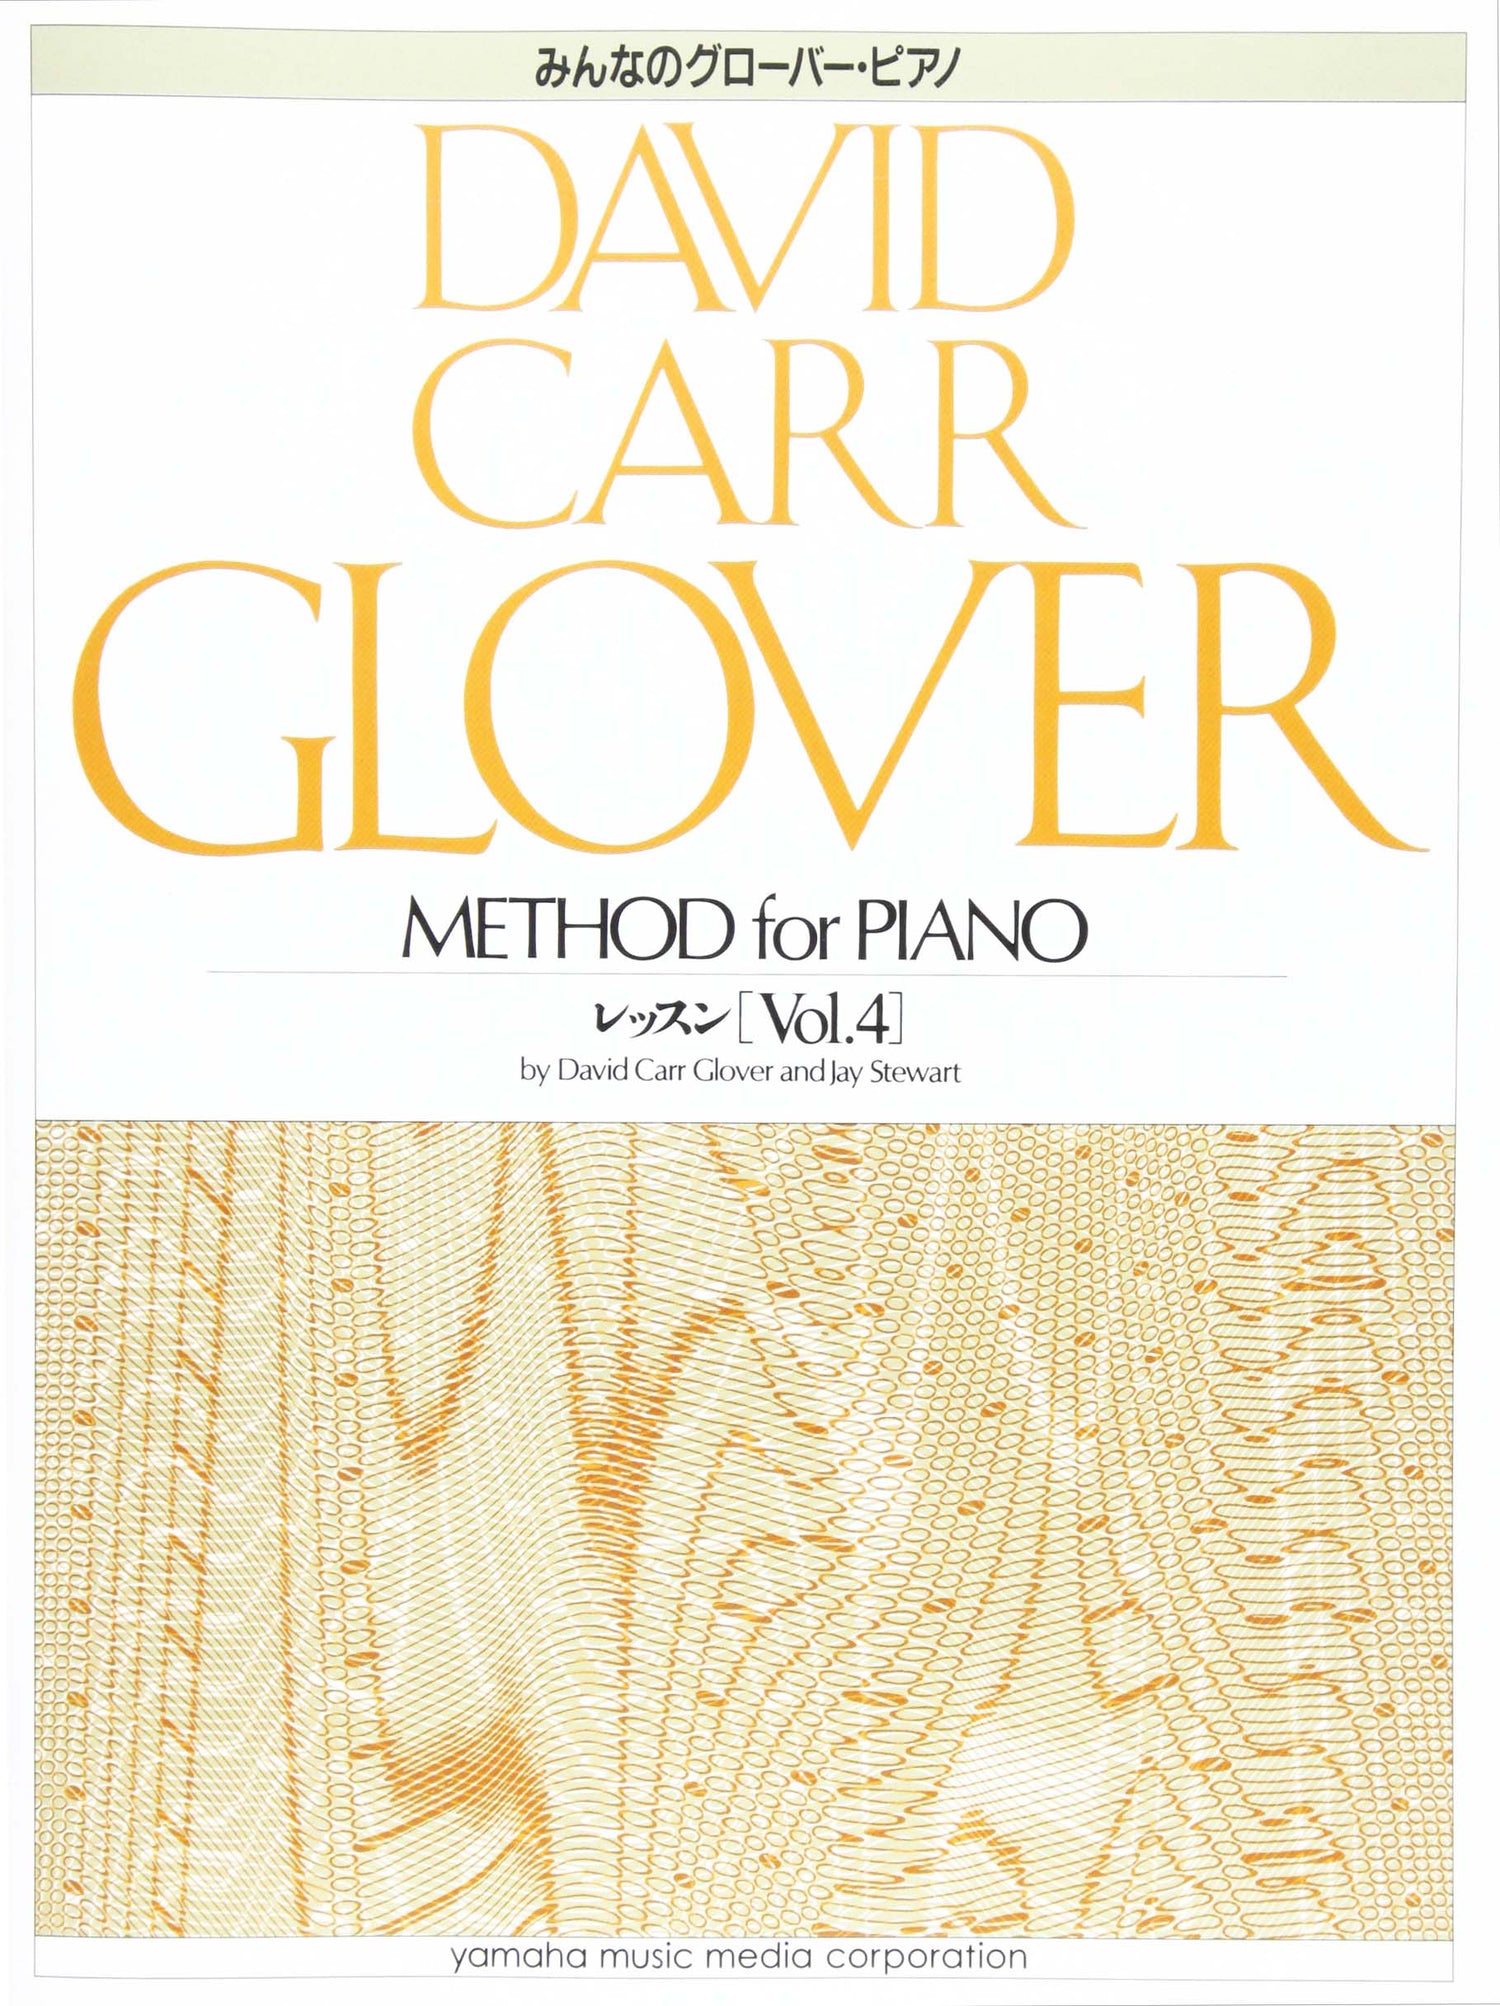 グローバー・ピアノ教育ライブラリー みんなのグローバー・ピアノ レッスン Vol.4